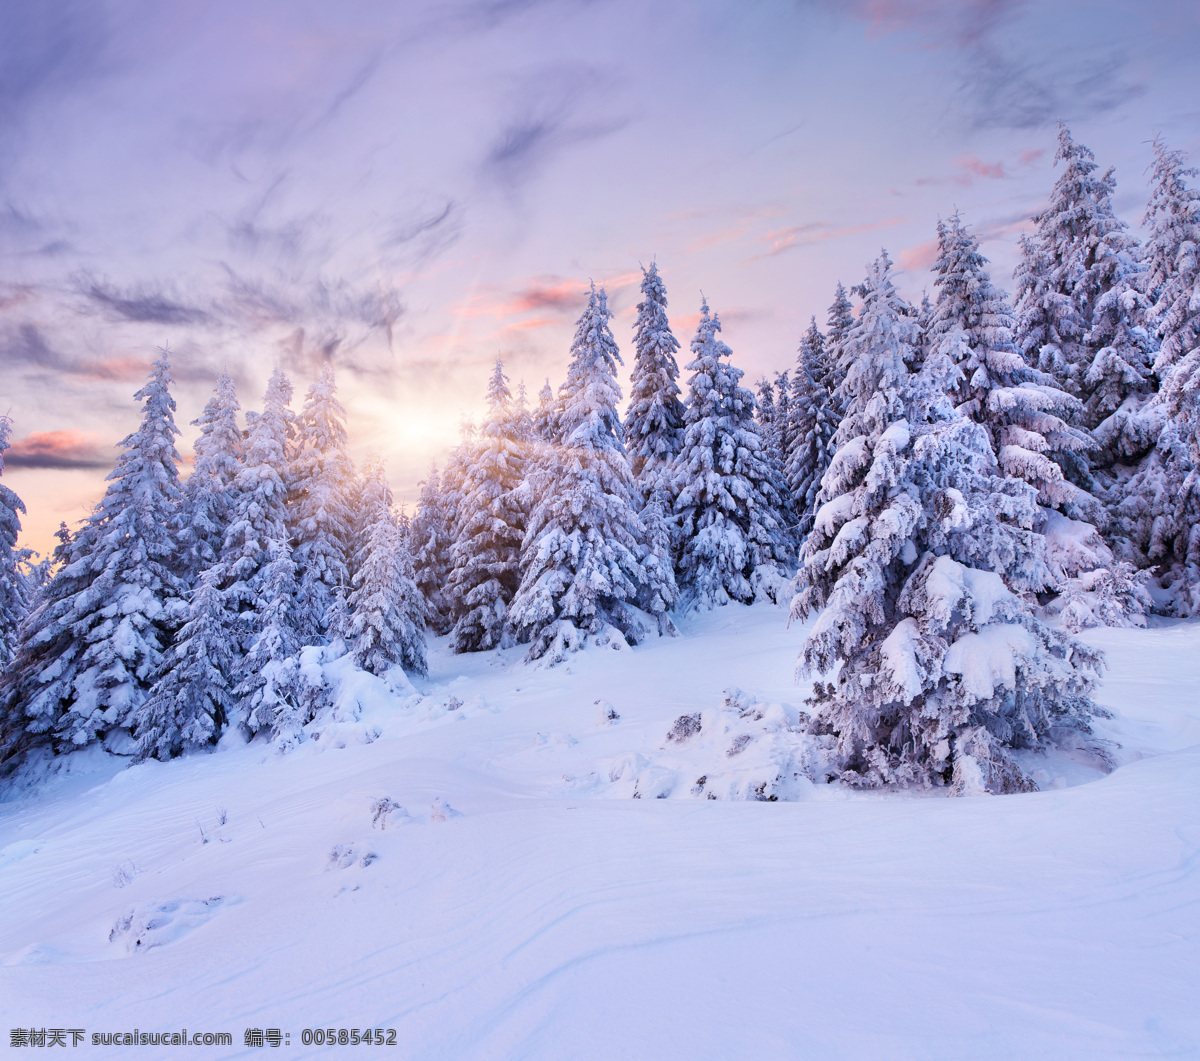 美丽森林雪景 冬天雪景 雪地 森林雪景 树林雪景 风景摄影 美丽风景 自然风景 自然景观 蓝色